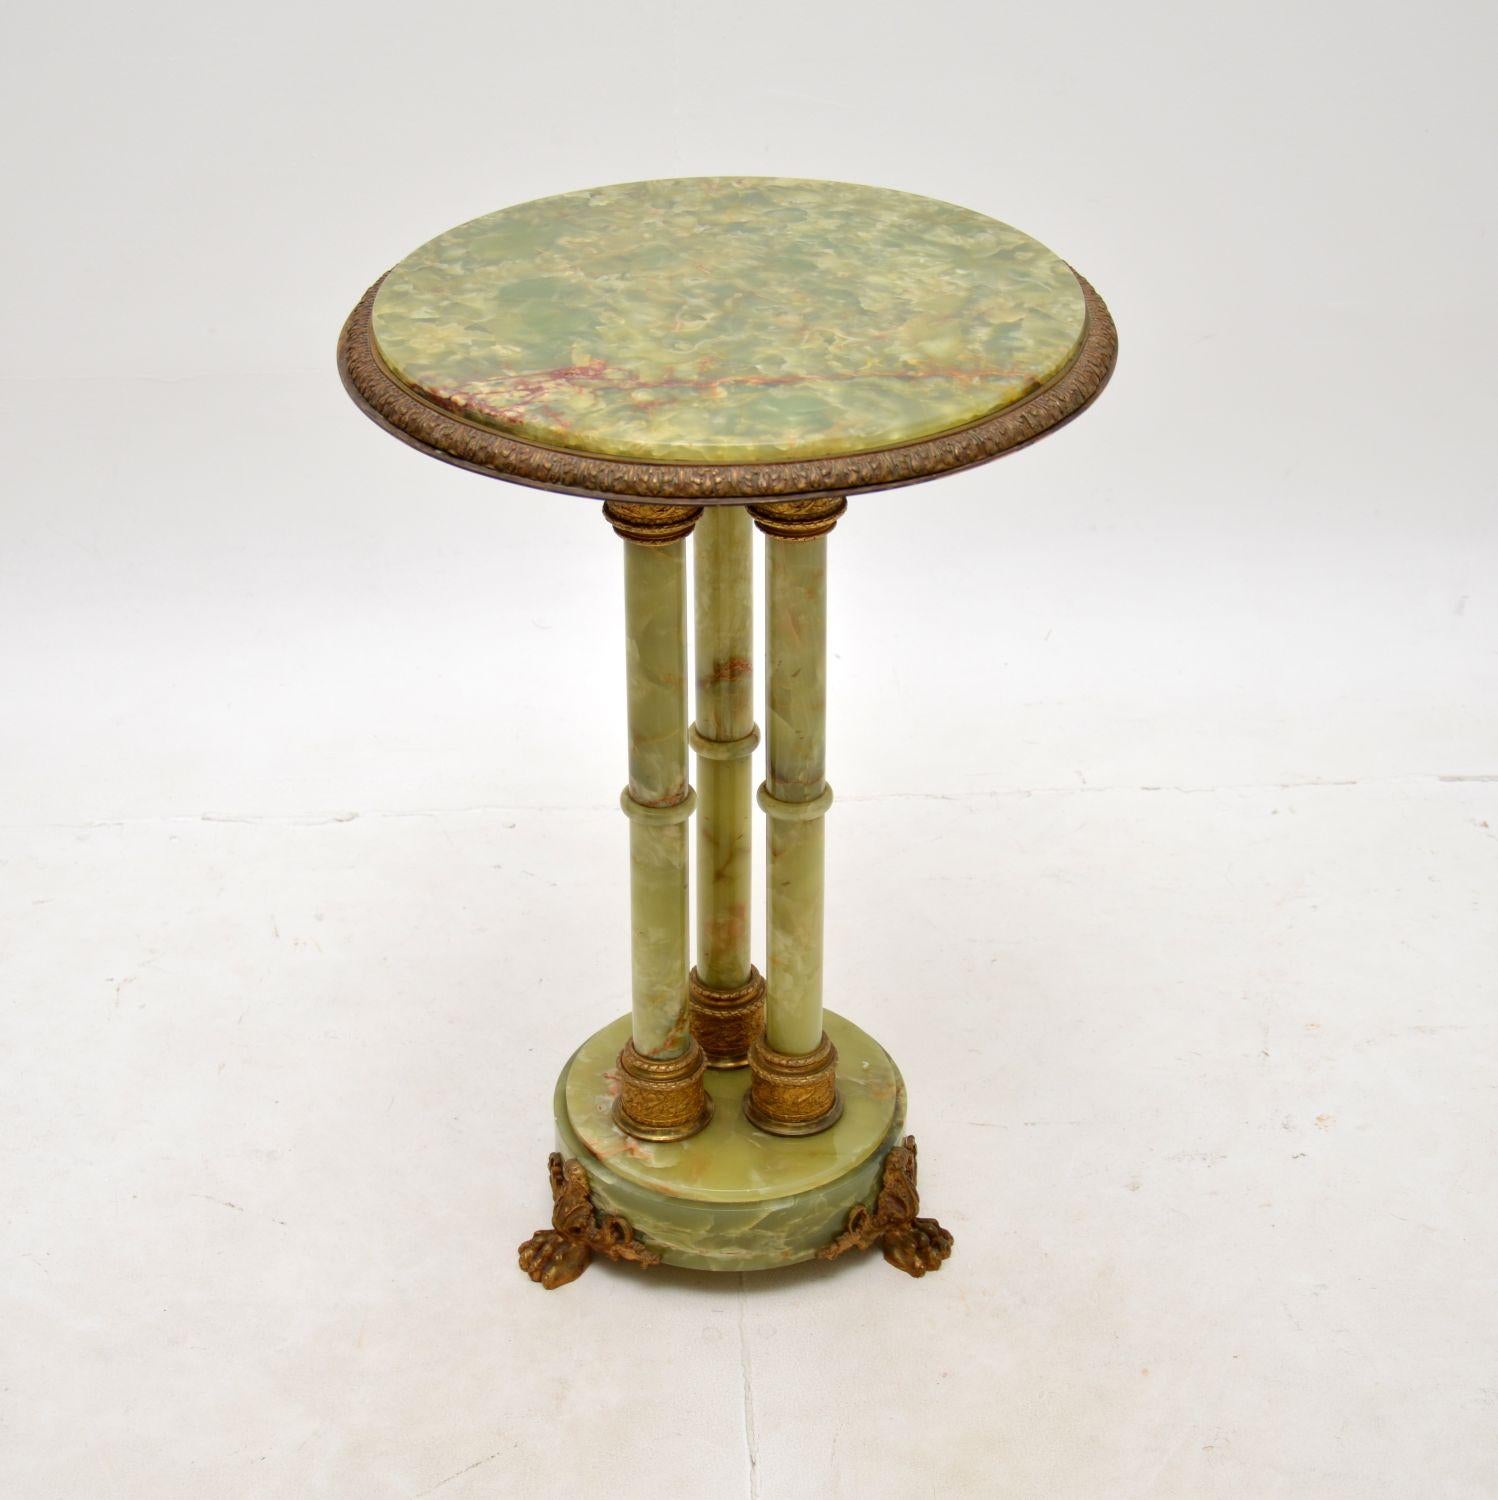 Magnifique table d'appoint ancienne en onyx et métal doré. Fabriqué en France, il date des années 1900-1910.

Il est d'une superbe qualité, magnifiquement construit et d'une taille très utile. Il s'agit principalement d'onyx massif, qui présente une